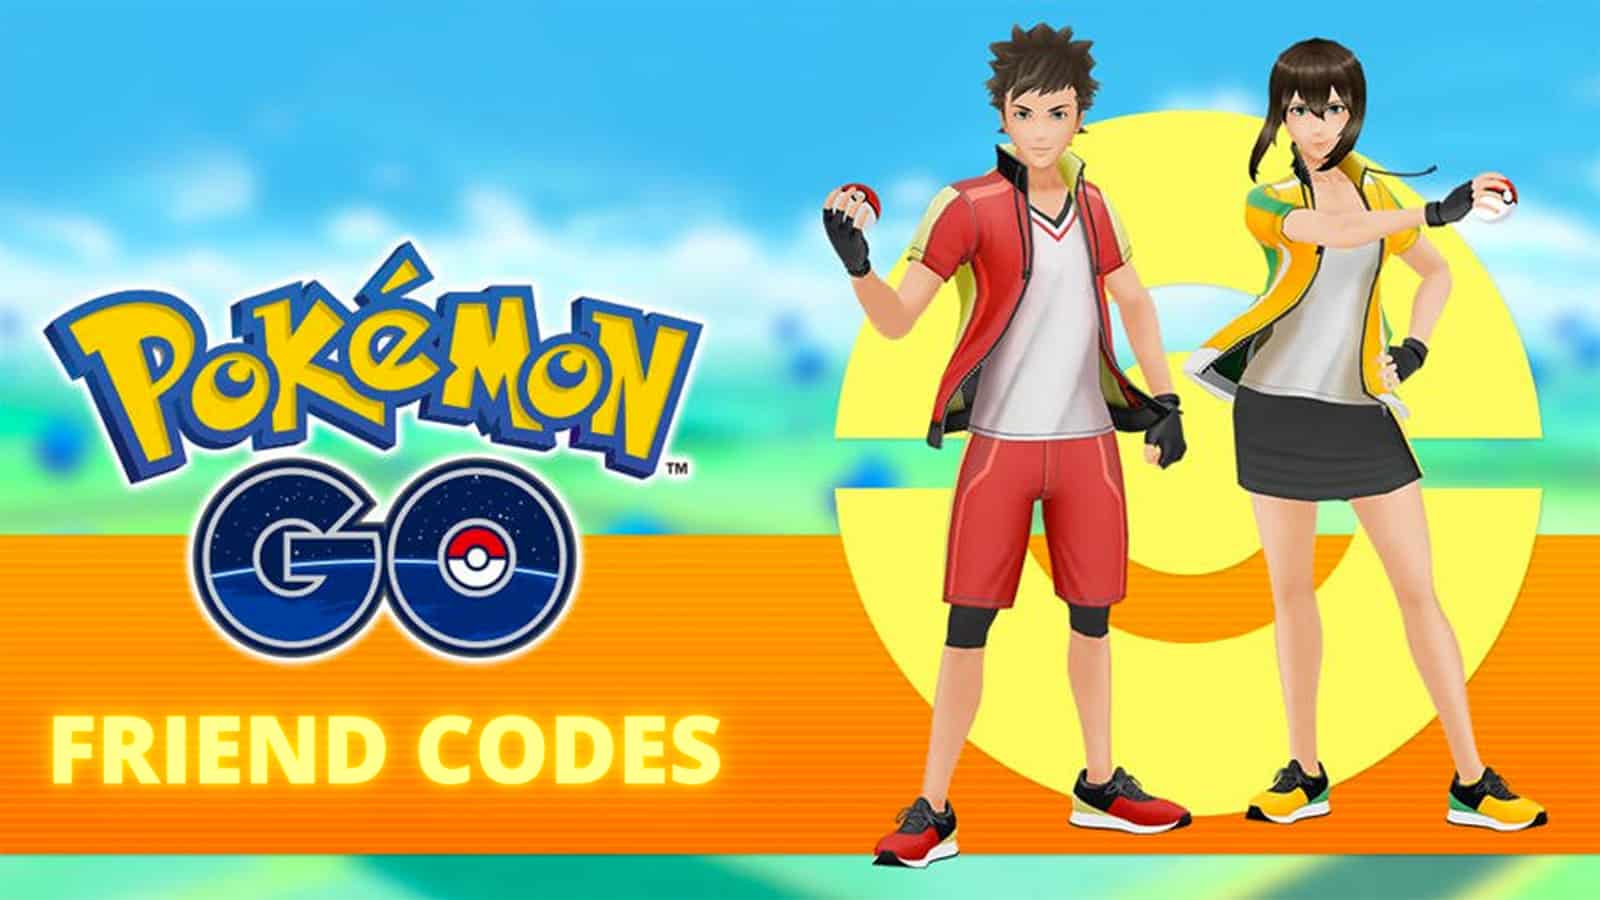 兩個培訓師在Pokemon Go中分享朋友代碼